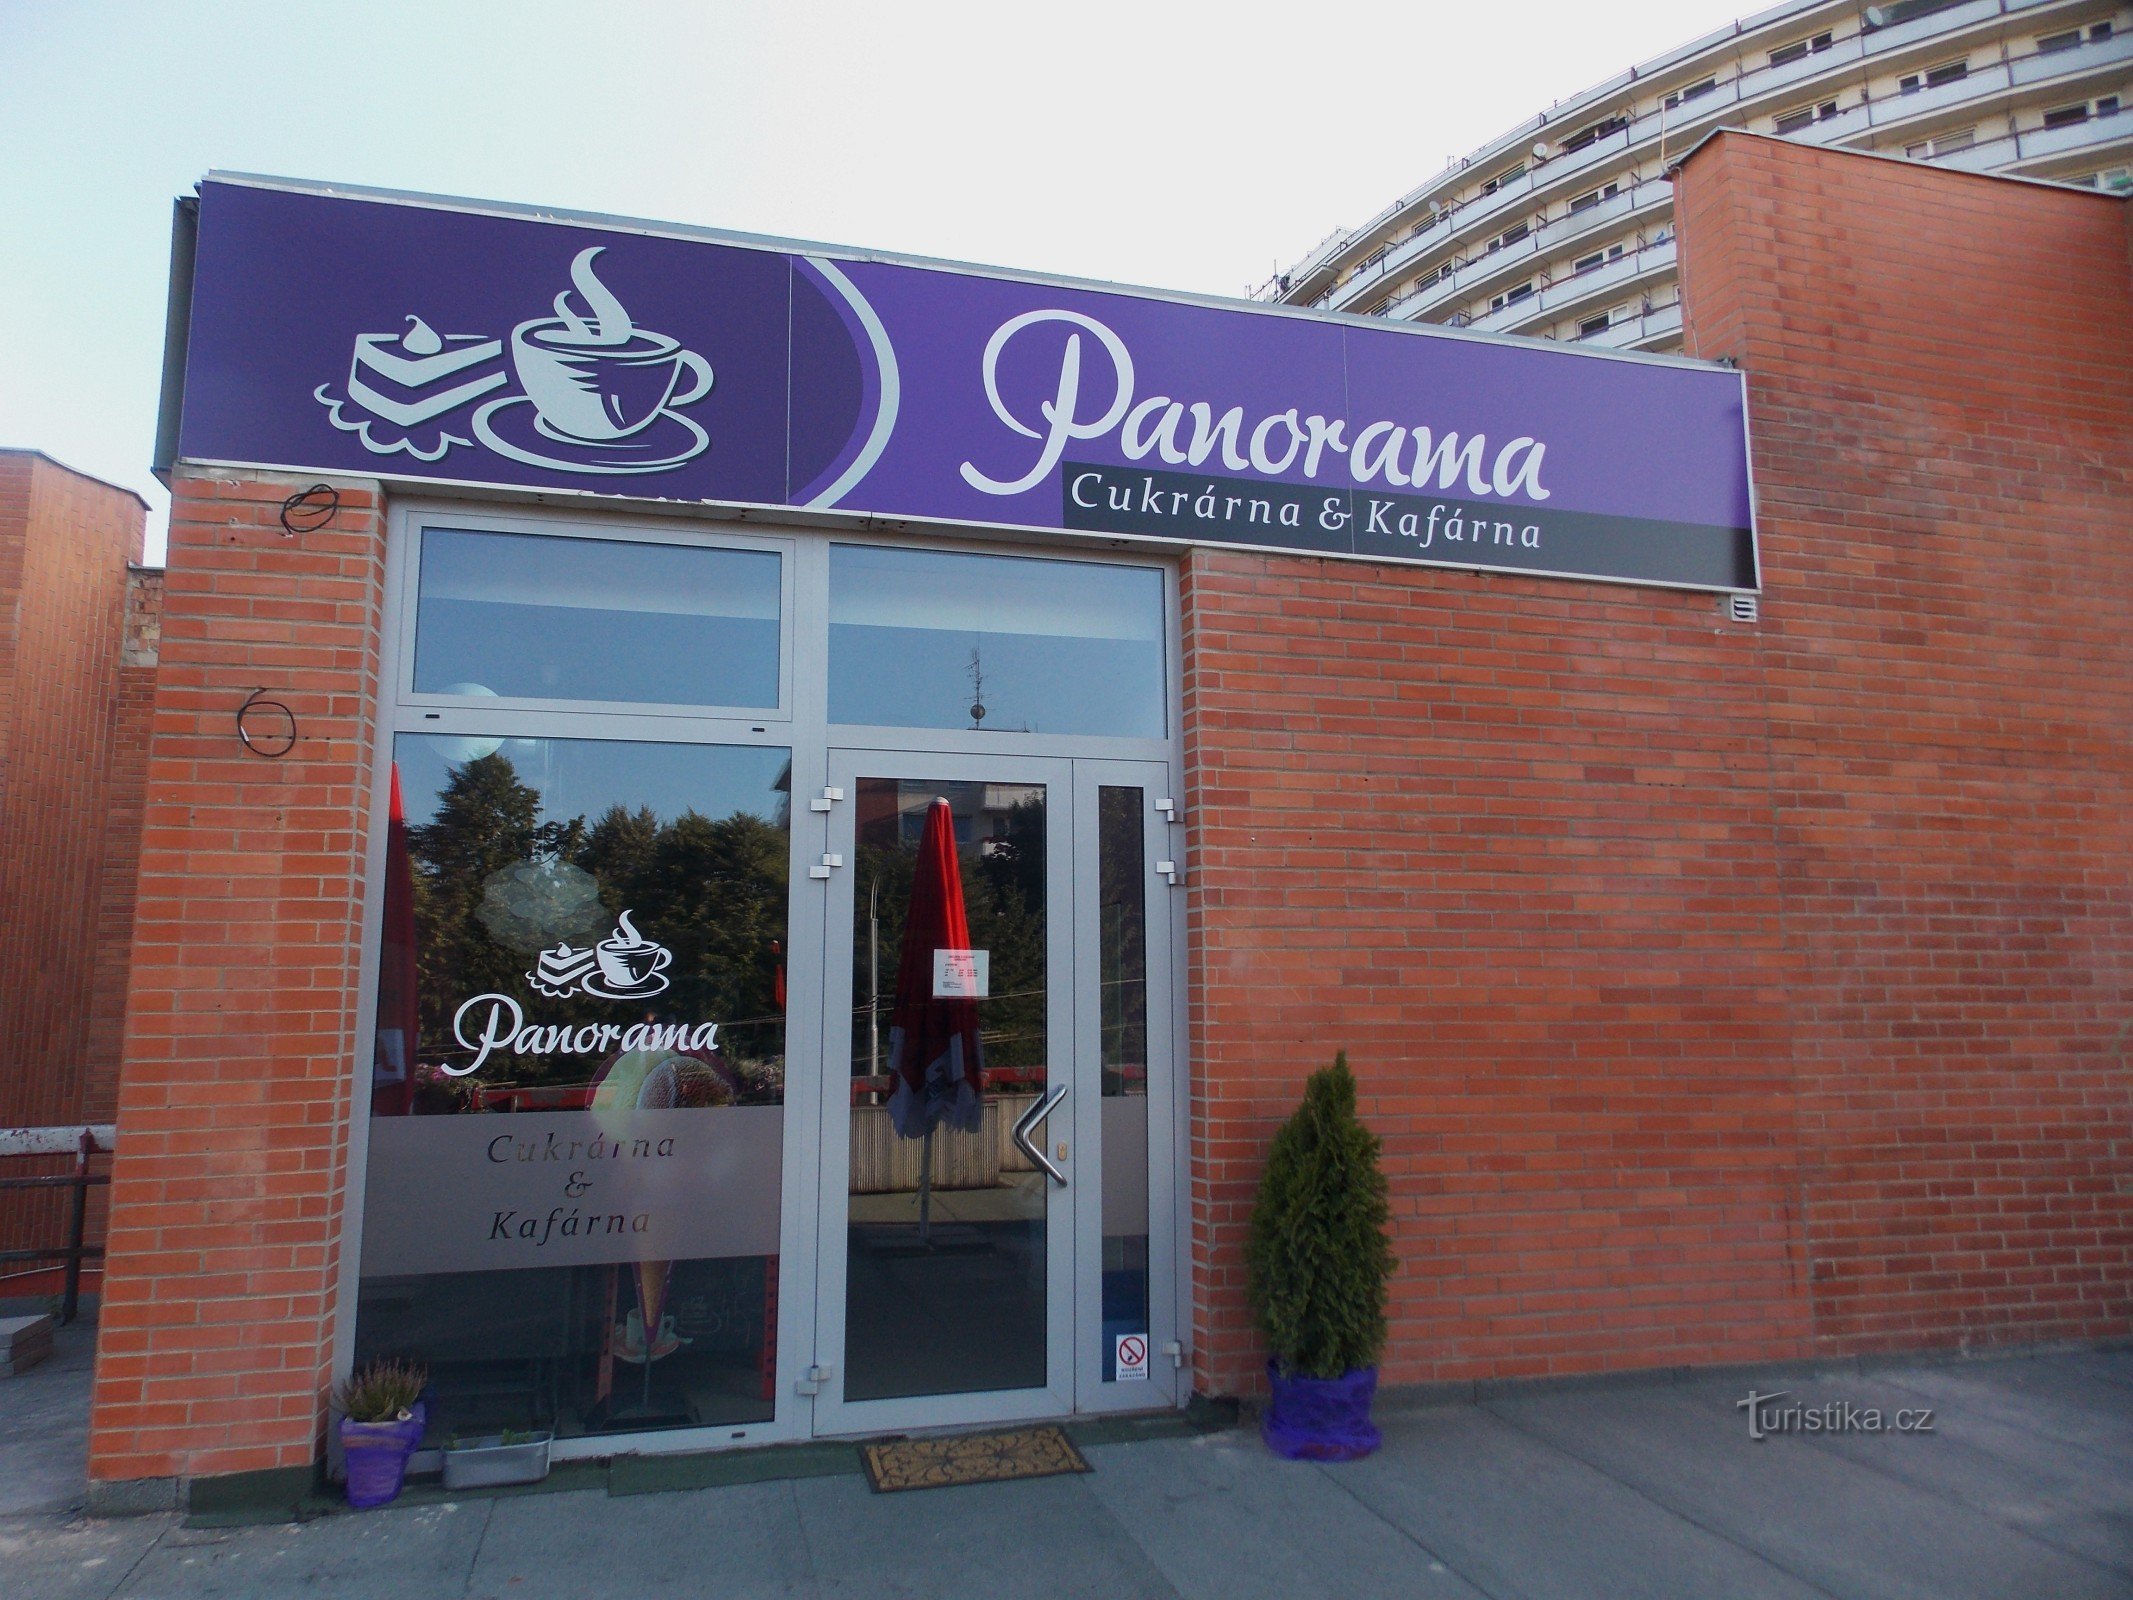 Pasticceria - Café Panorama a Zlín